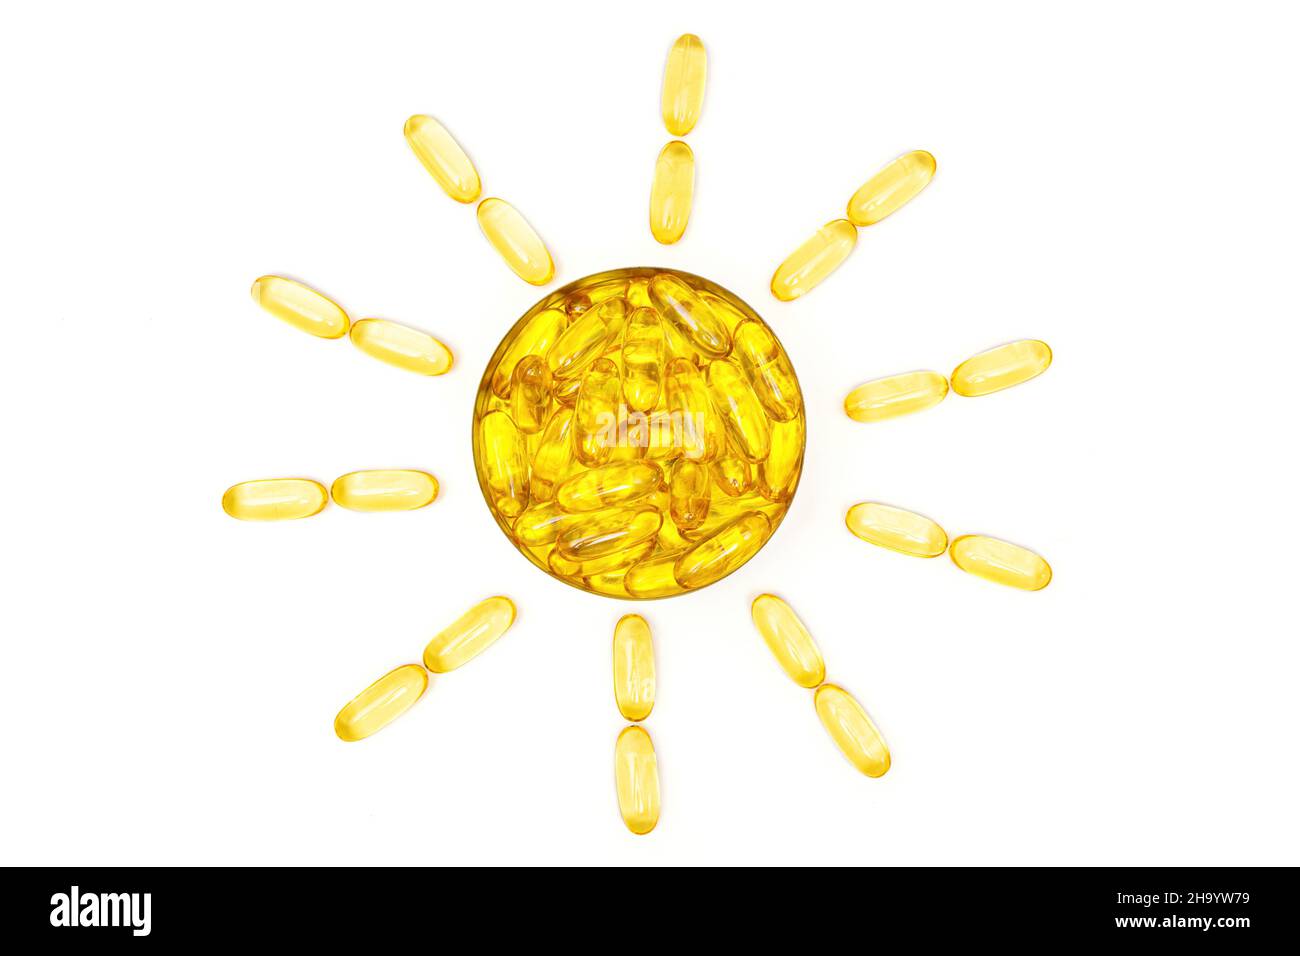 Capsules de gel souple oméga-3 d'huile de poisson translucide disposées en forme de soleil, isolées sur fond blanc.Supplément alimentaire stimulant l'immunité de la peau au soleil Banque D'Images